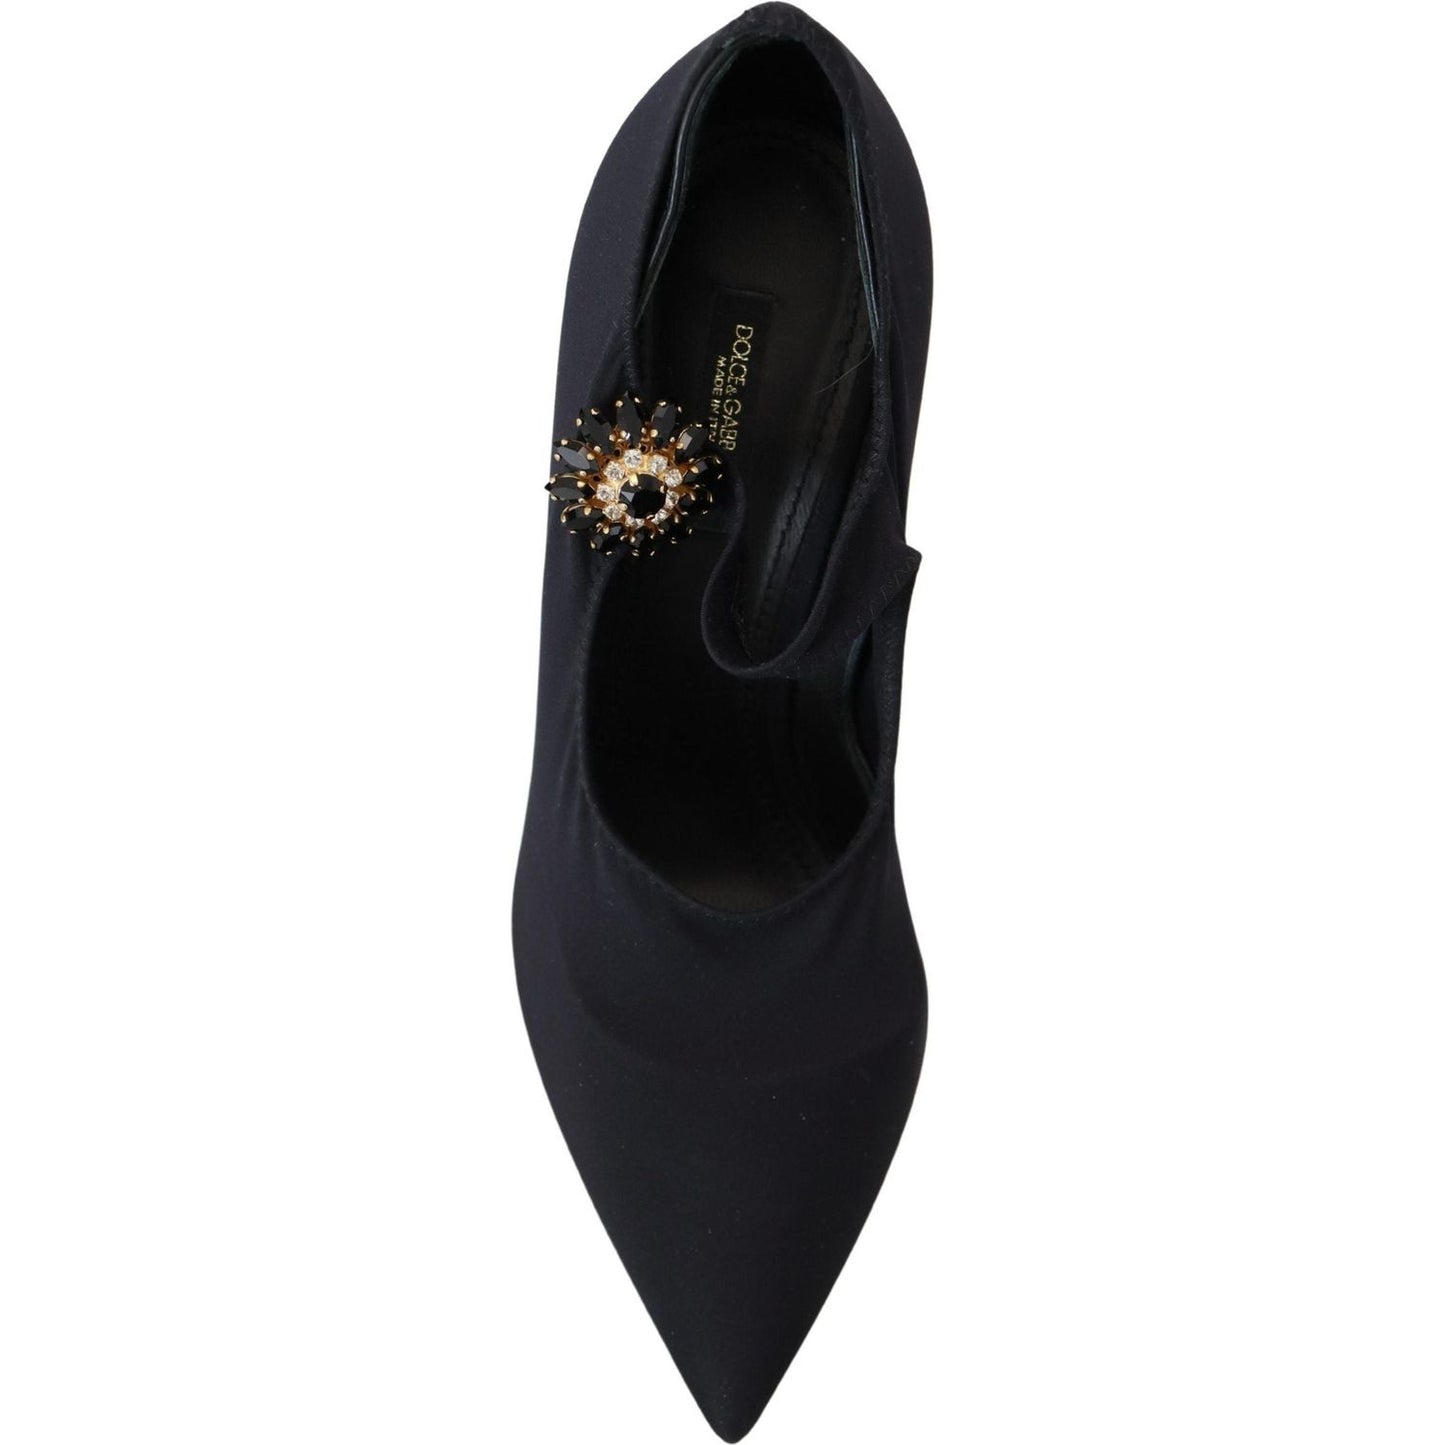 Dolce & GabbanaChic Black Mary Jane Sock Pumps with CrystalsMcRichard Designer Brands£499.00